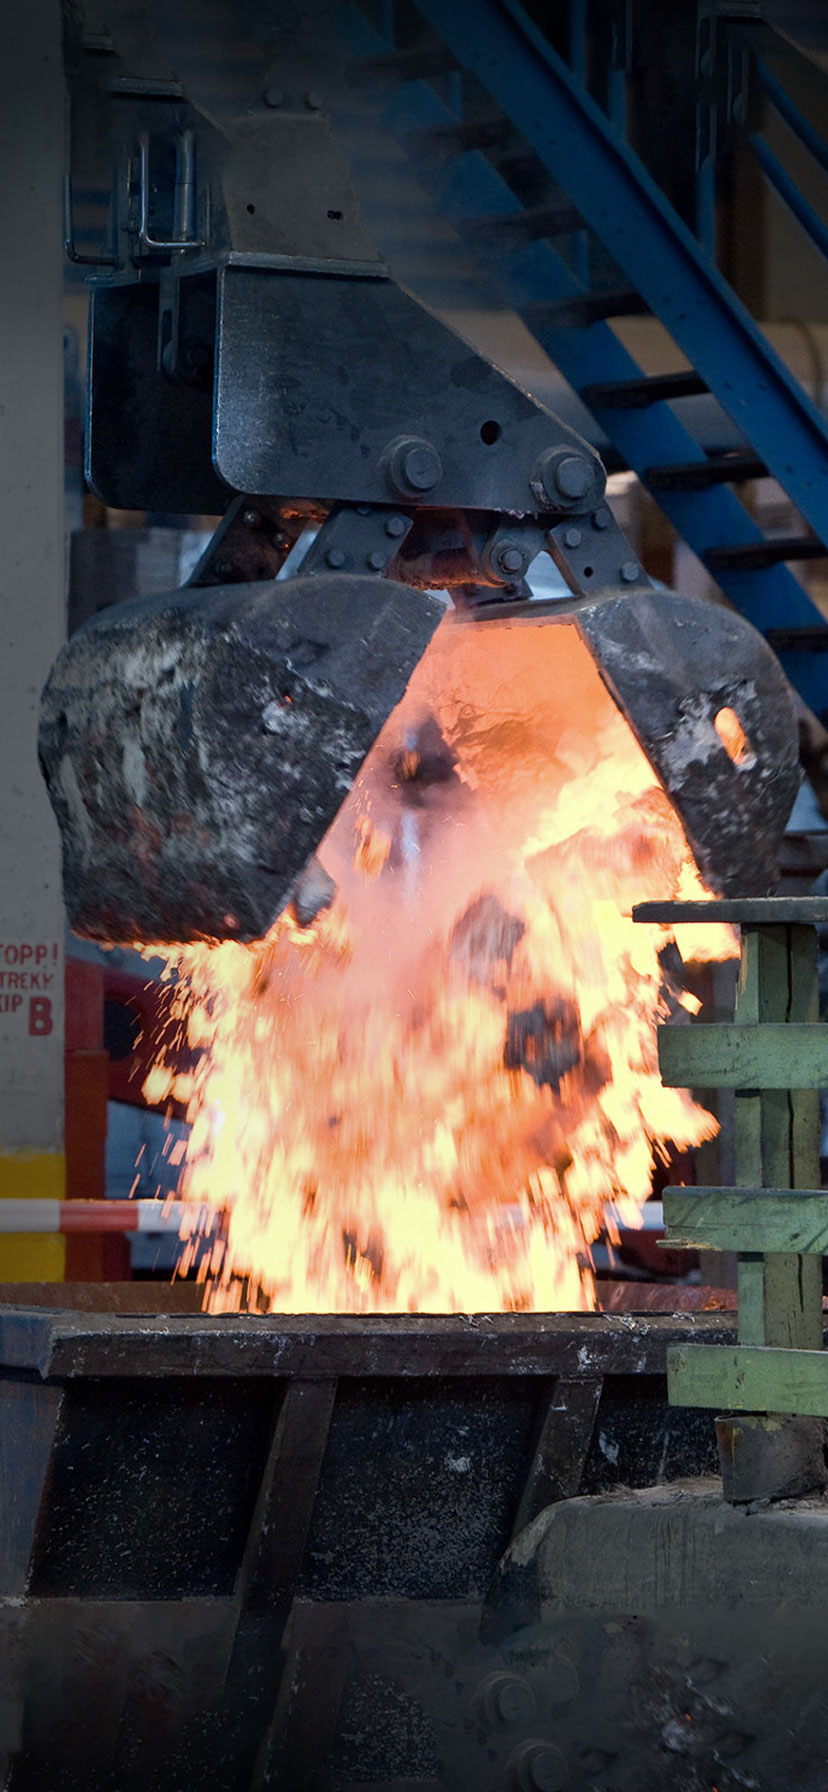 smelting alumina